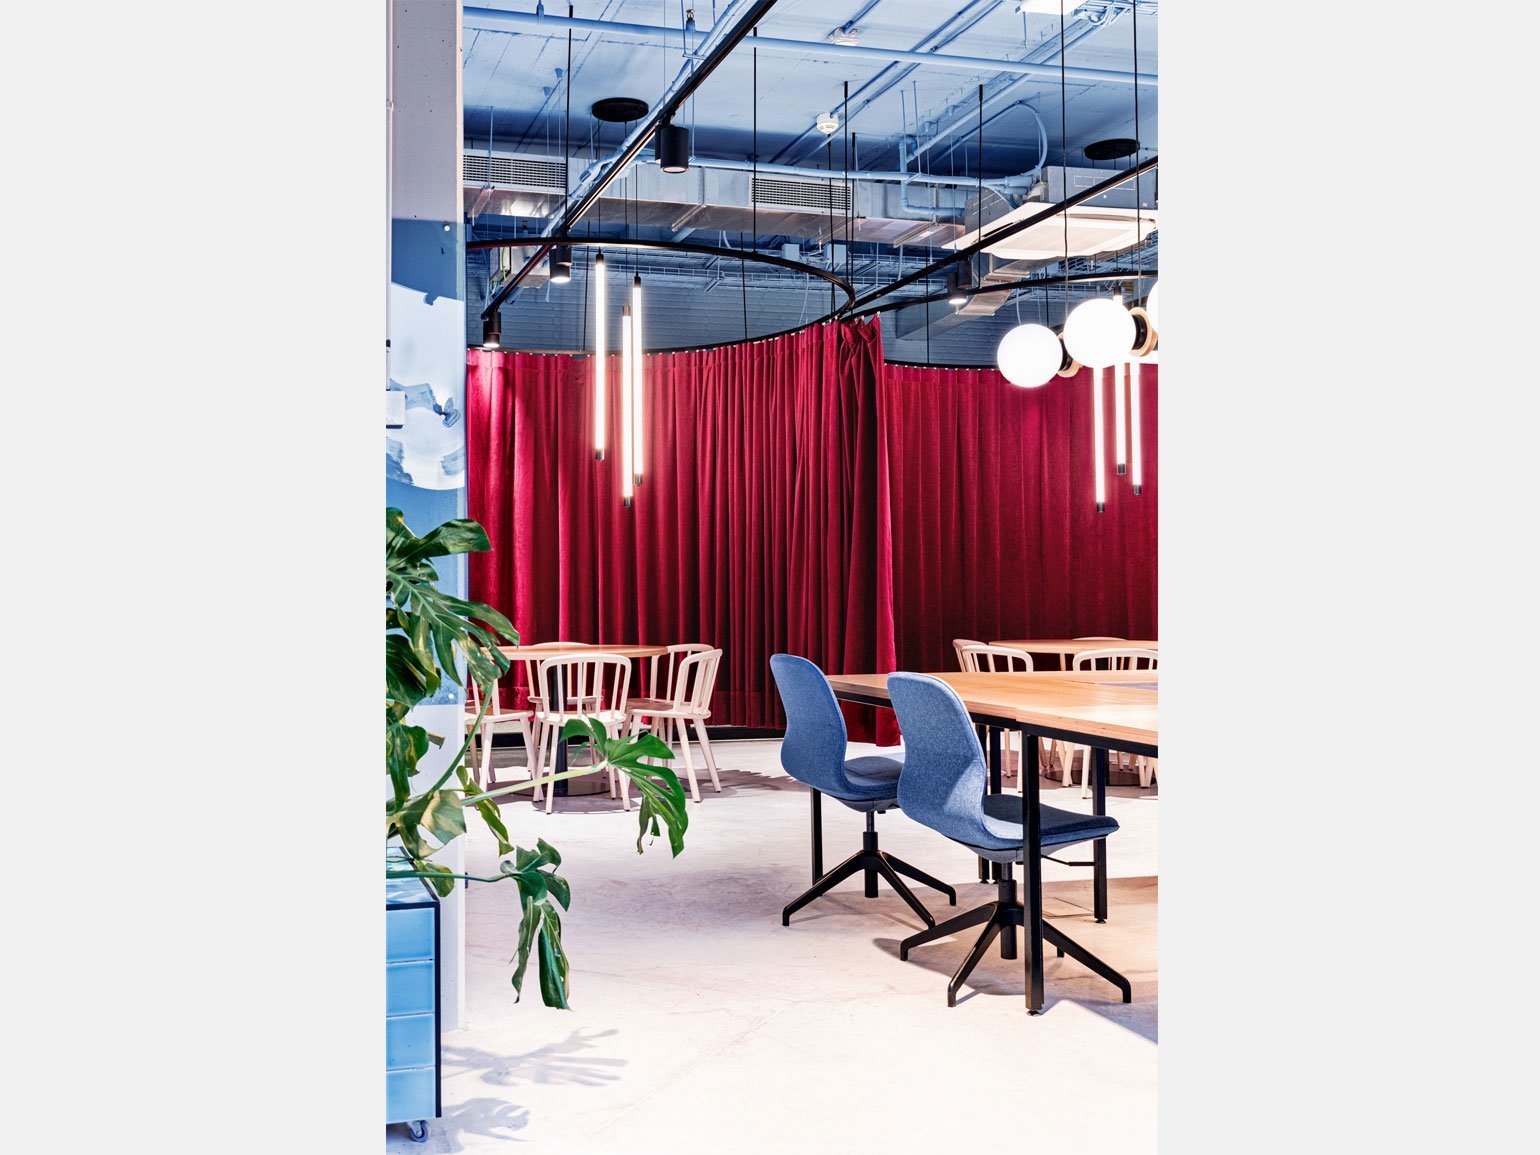 дизайн пространства коворкинга с голубыми стенами, красными шторами для отделения приватного пространства и серым бетонным полом